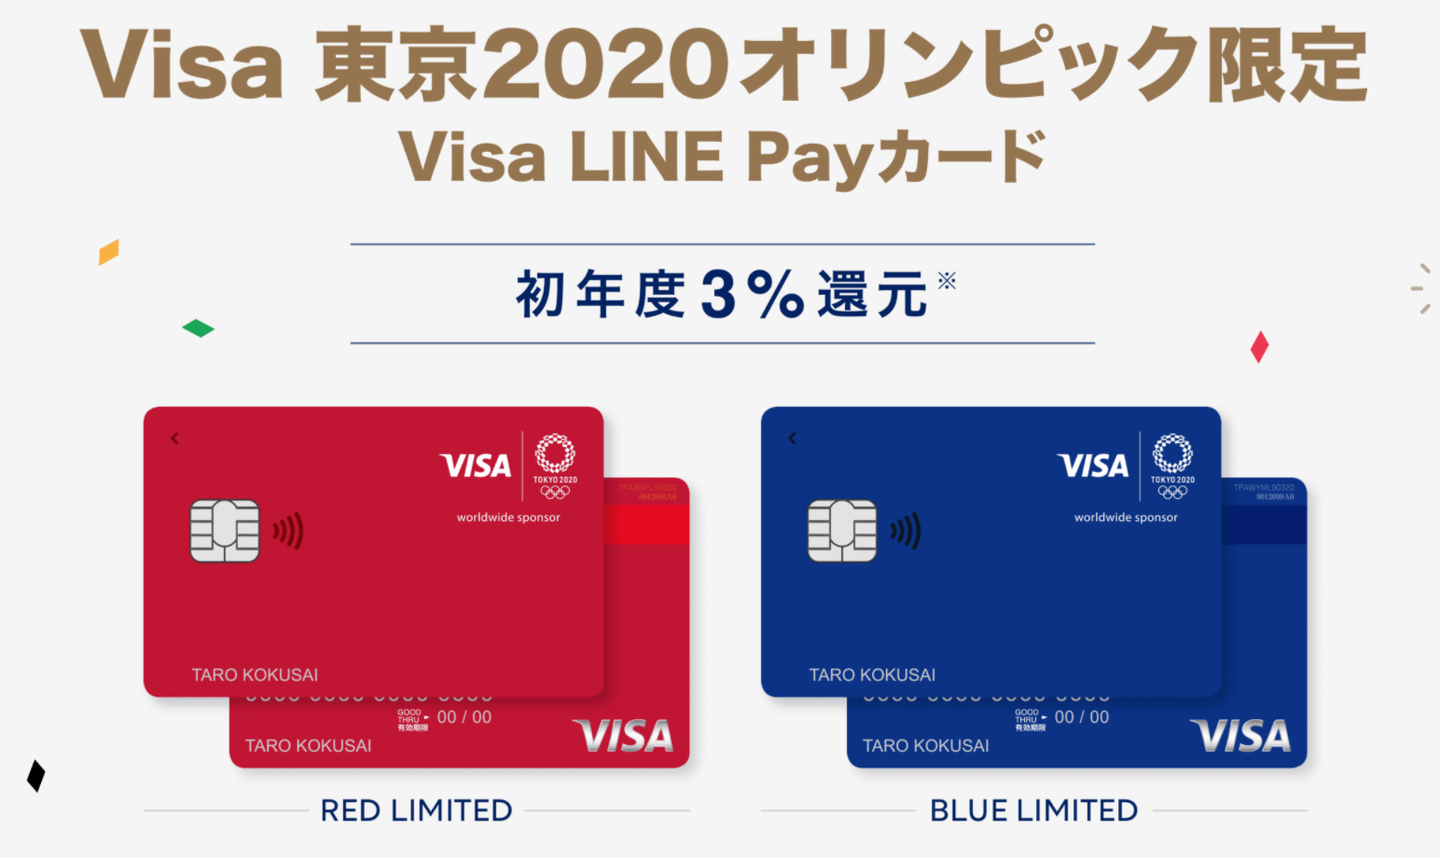 聊聊日本的信用卡 一 Visa Linepay 知乎